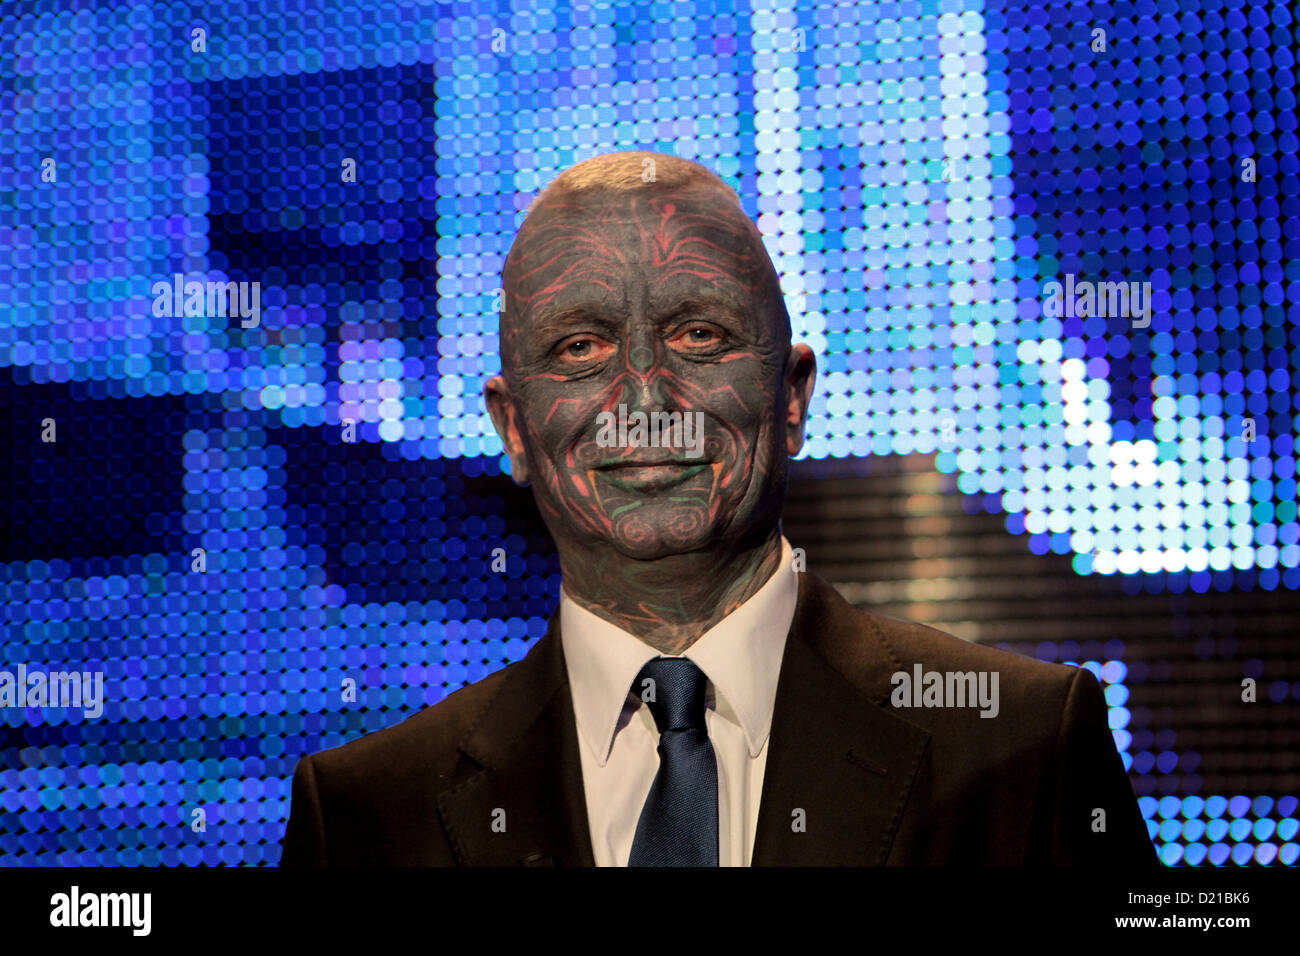 10 janv. 2013 Prague, République Tchèque. Le candidat à la présidence tchèque Vladimir Franz assiste à un dernier débat télévisé. Tatouage visage homme Banque D'Images